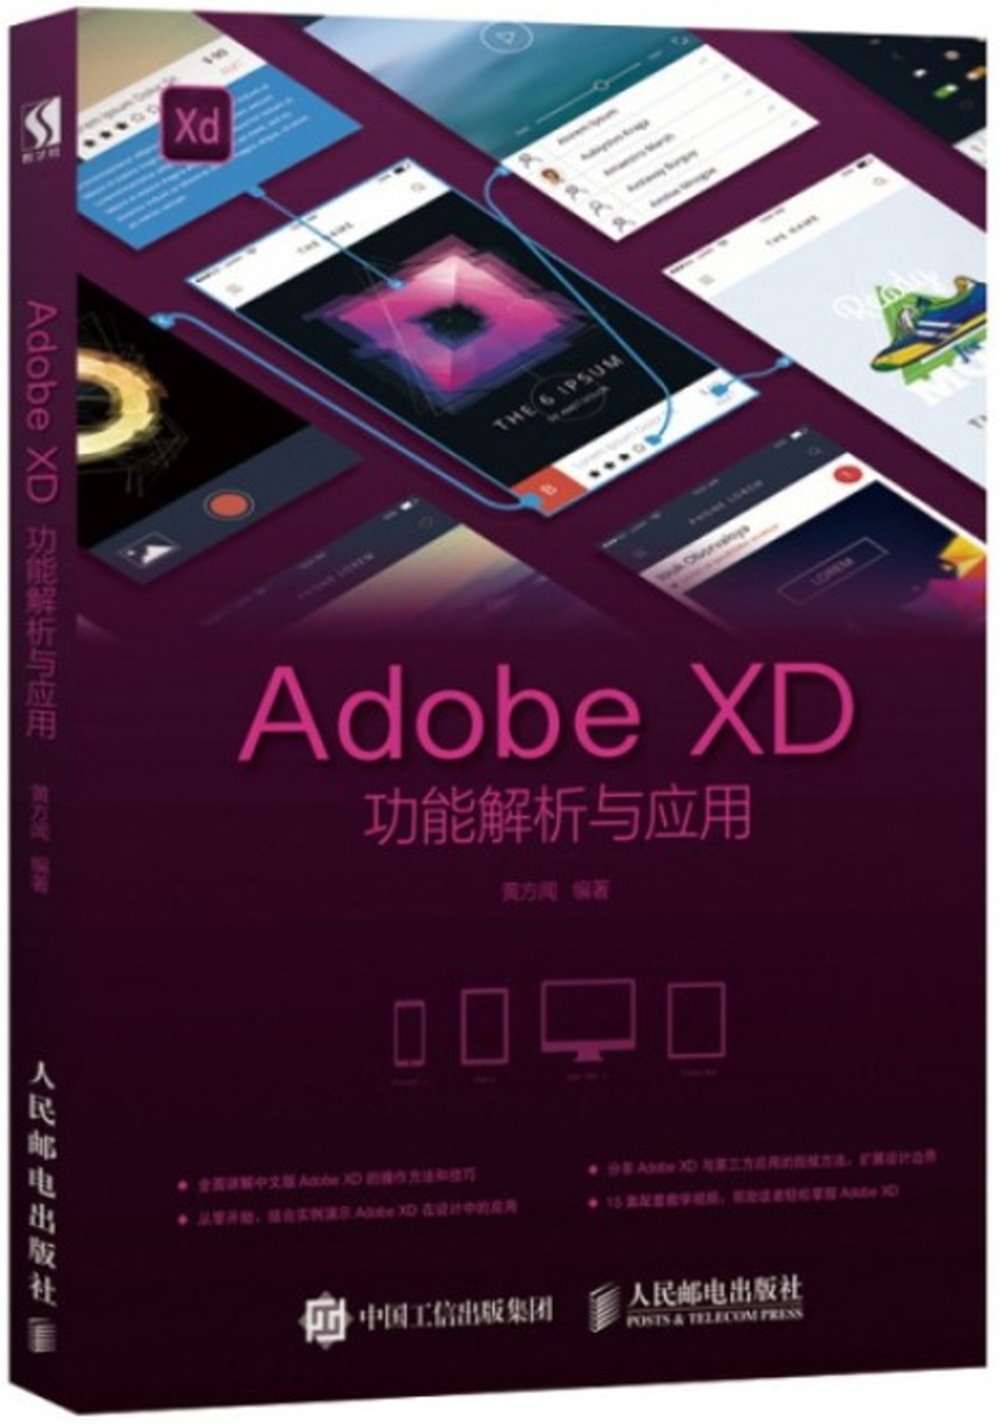 Adobe XD功能解析與應用